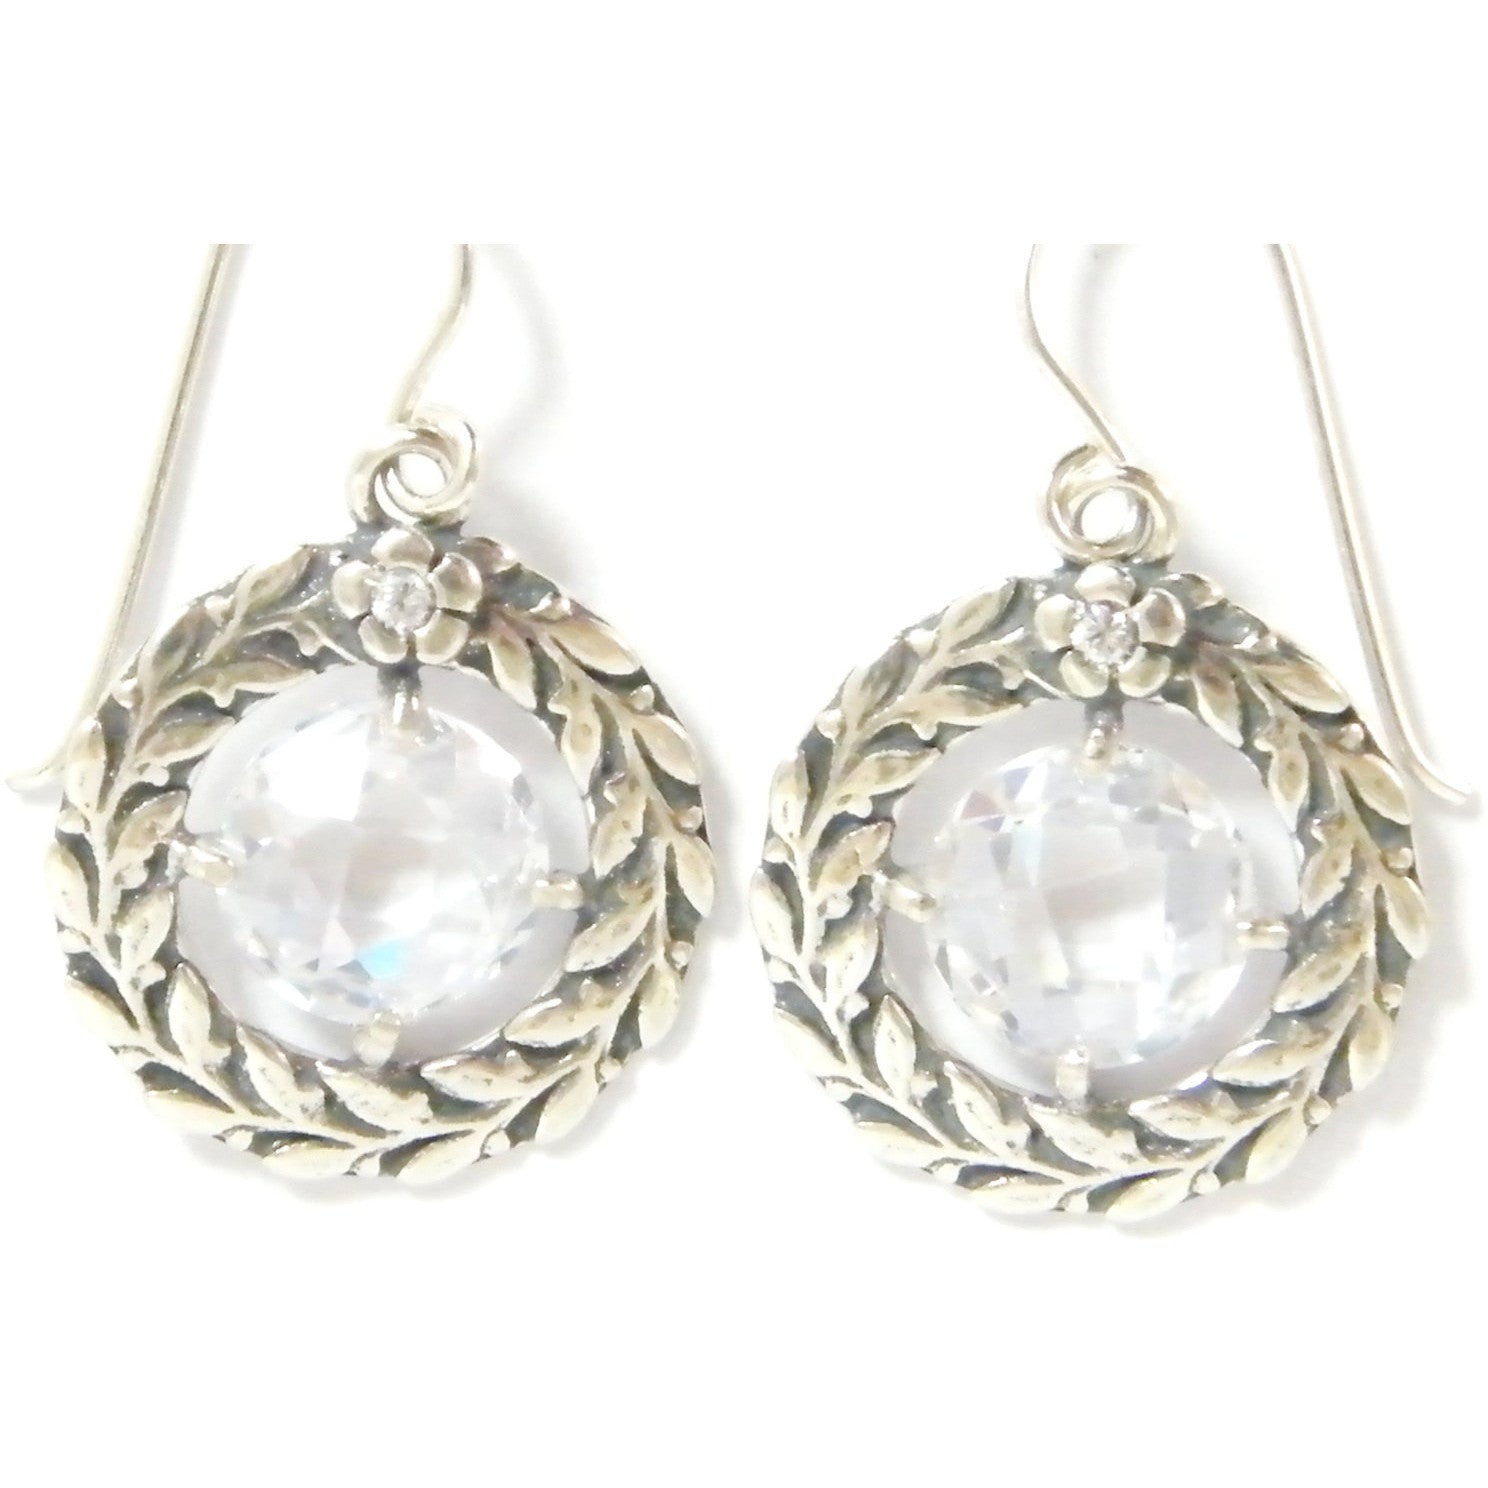 Silver earrings / earrings for women / leaves design earrings-Earrings-Bluenoemi Jewelry